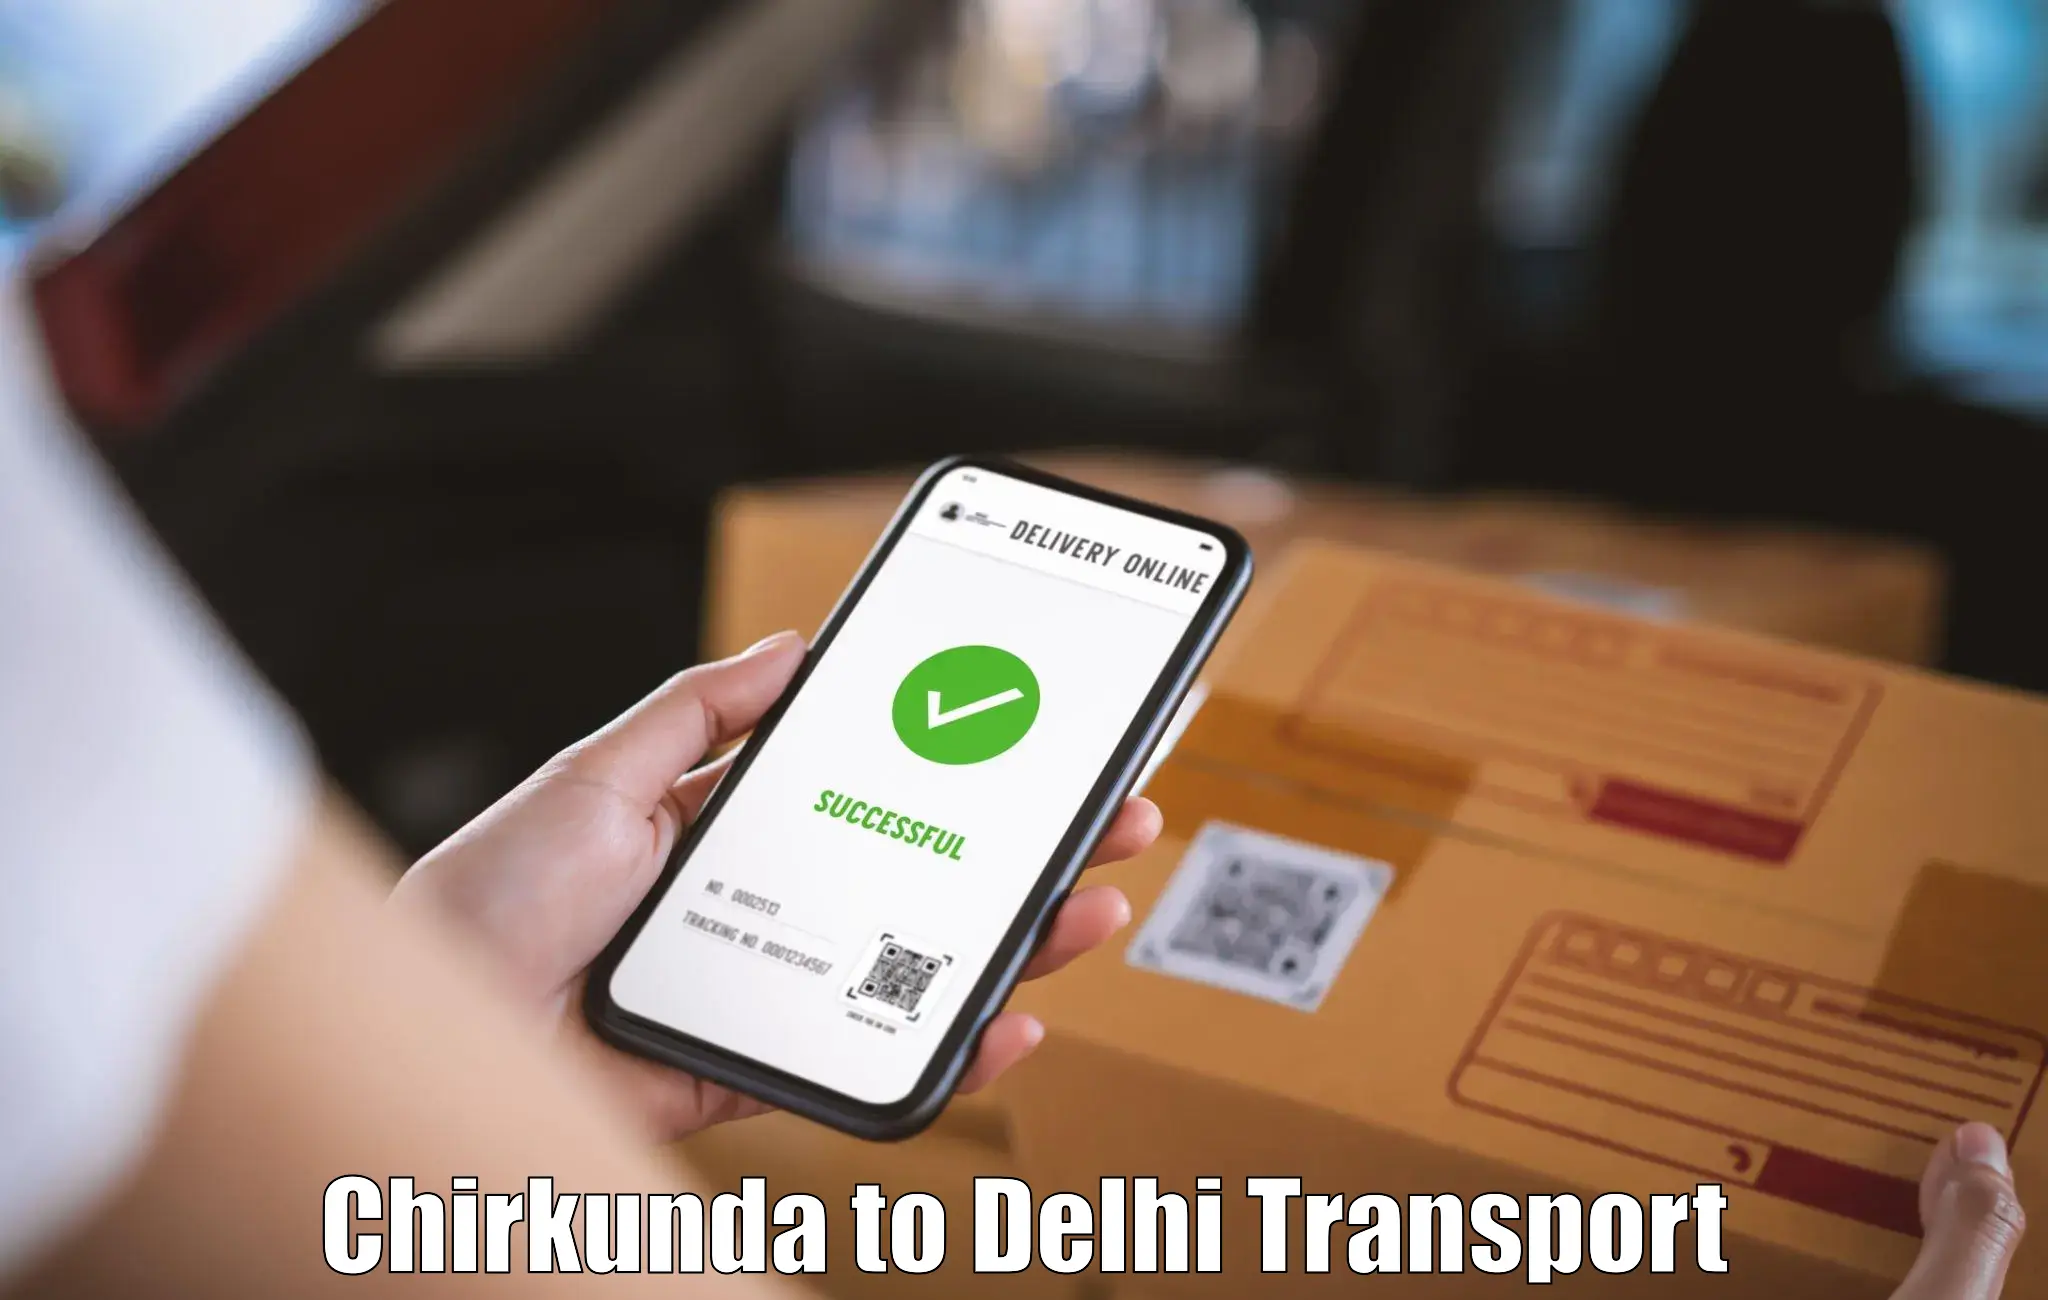 Transportation services Chirkunda to East Delhi